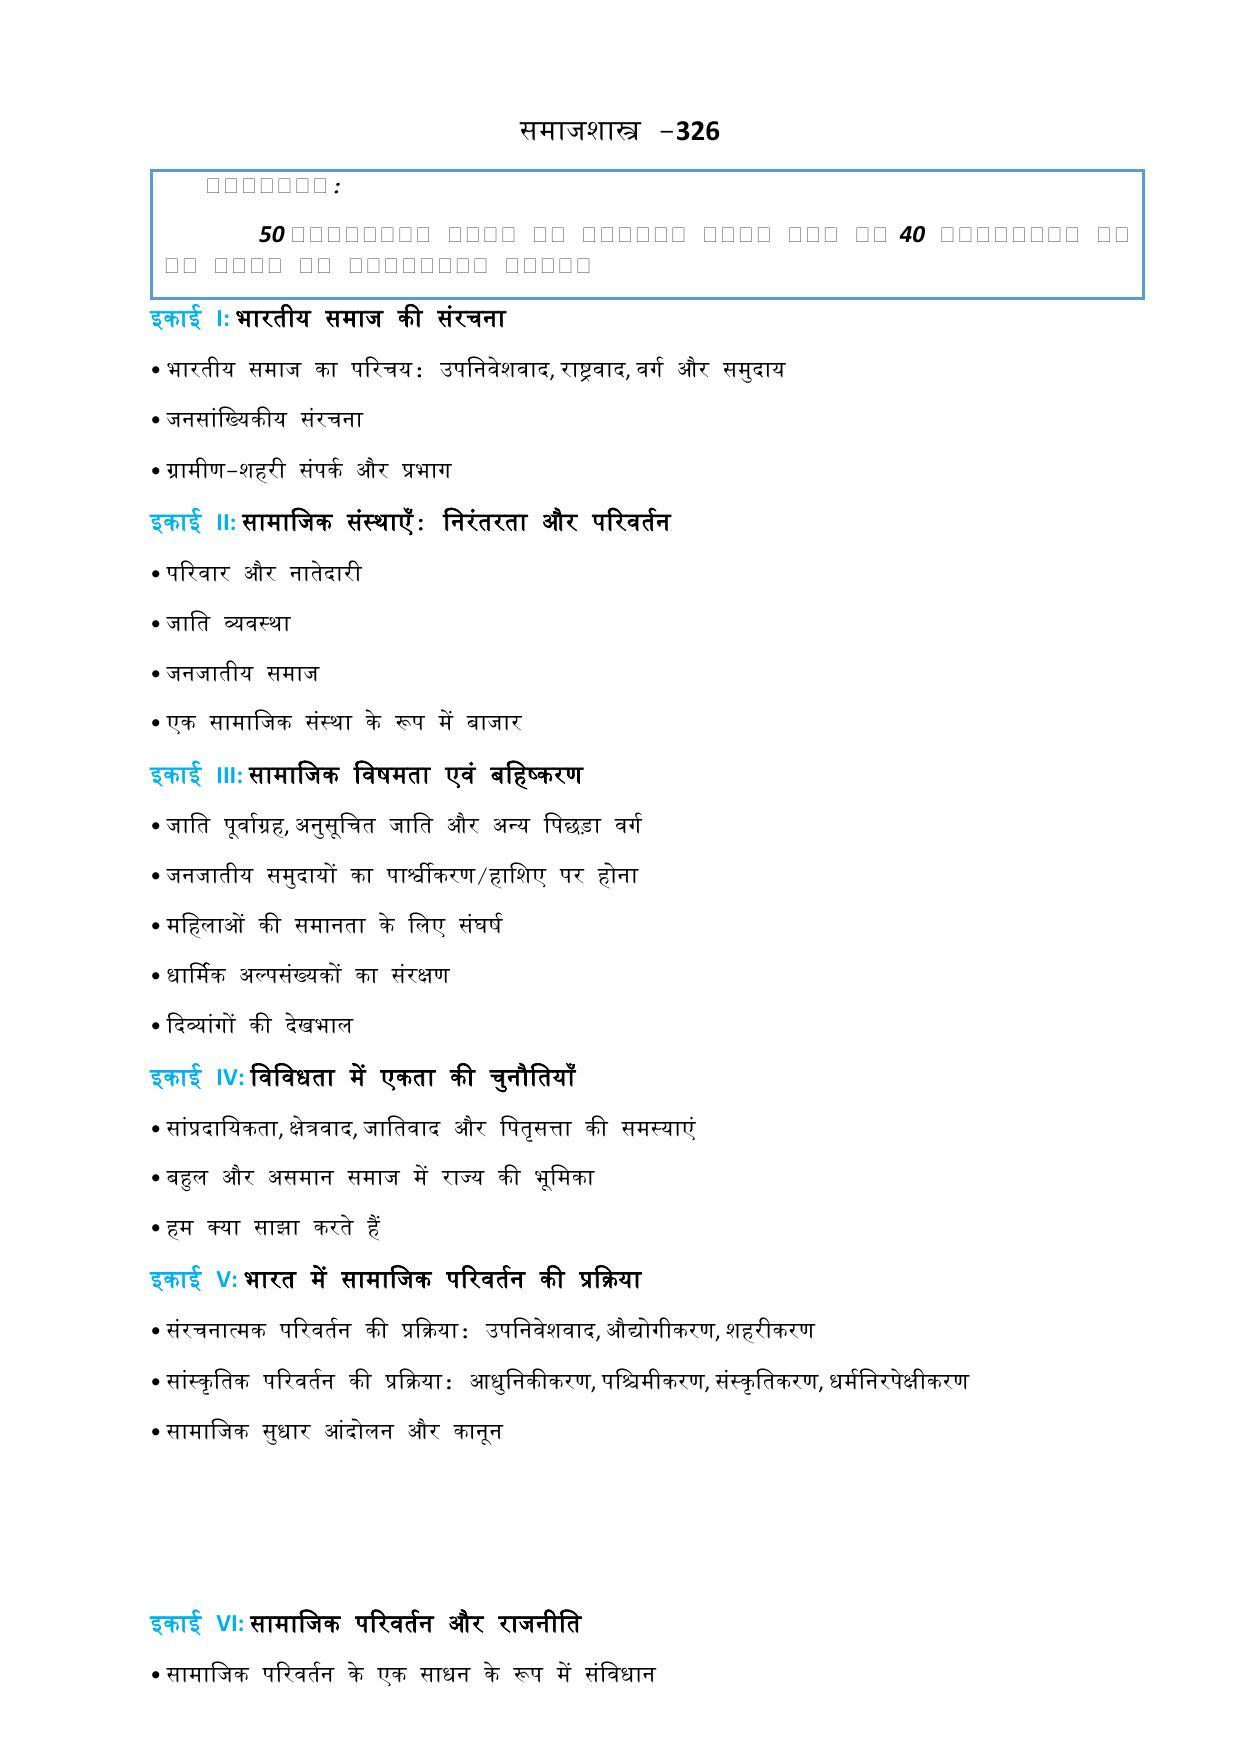 CUET Syllabus for Sociology (Hindi) - Page 2